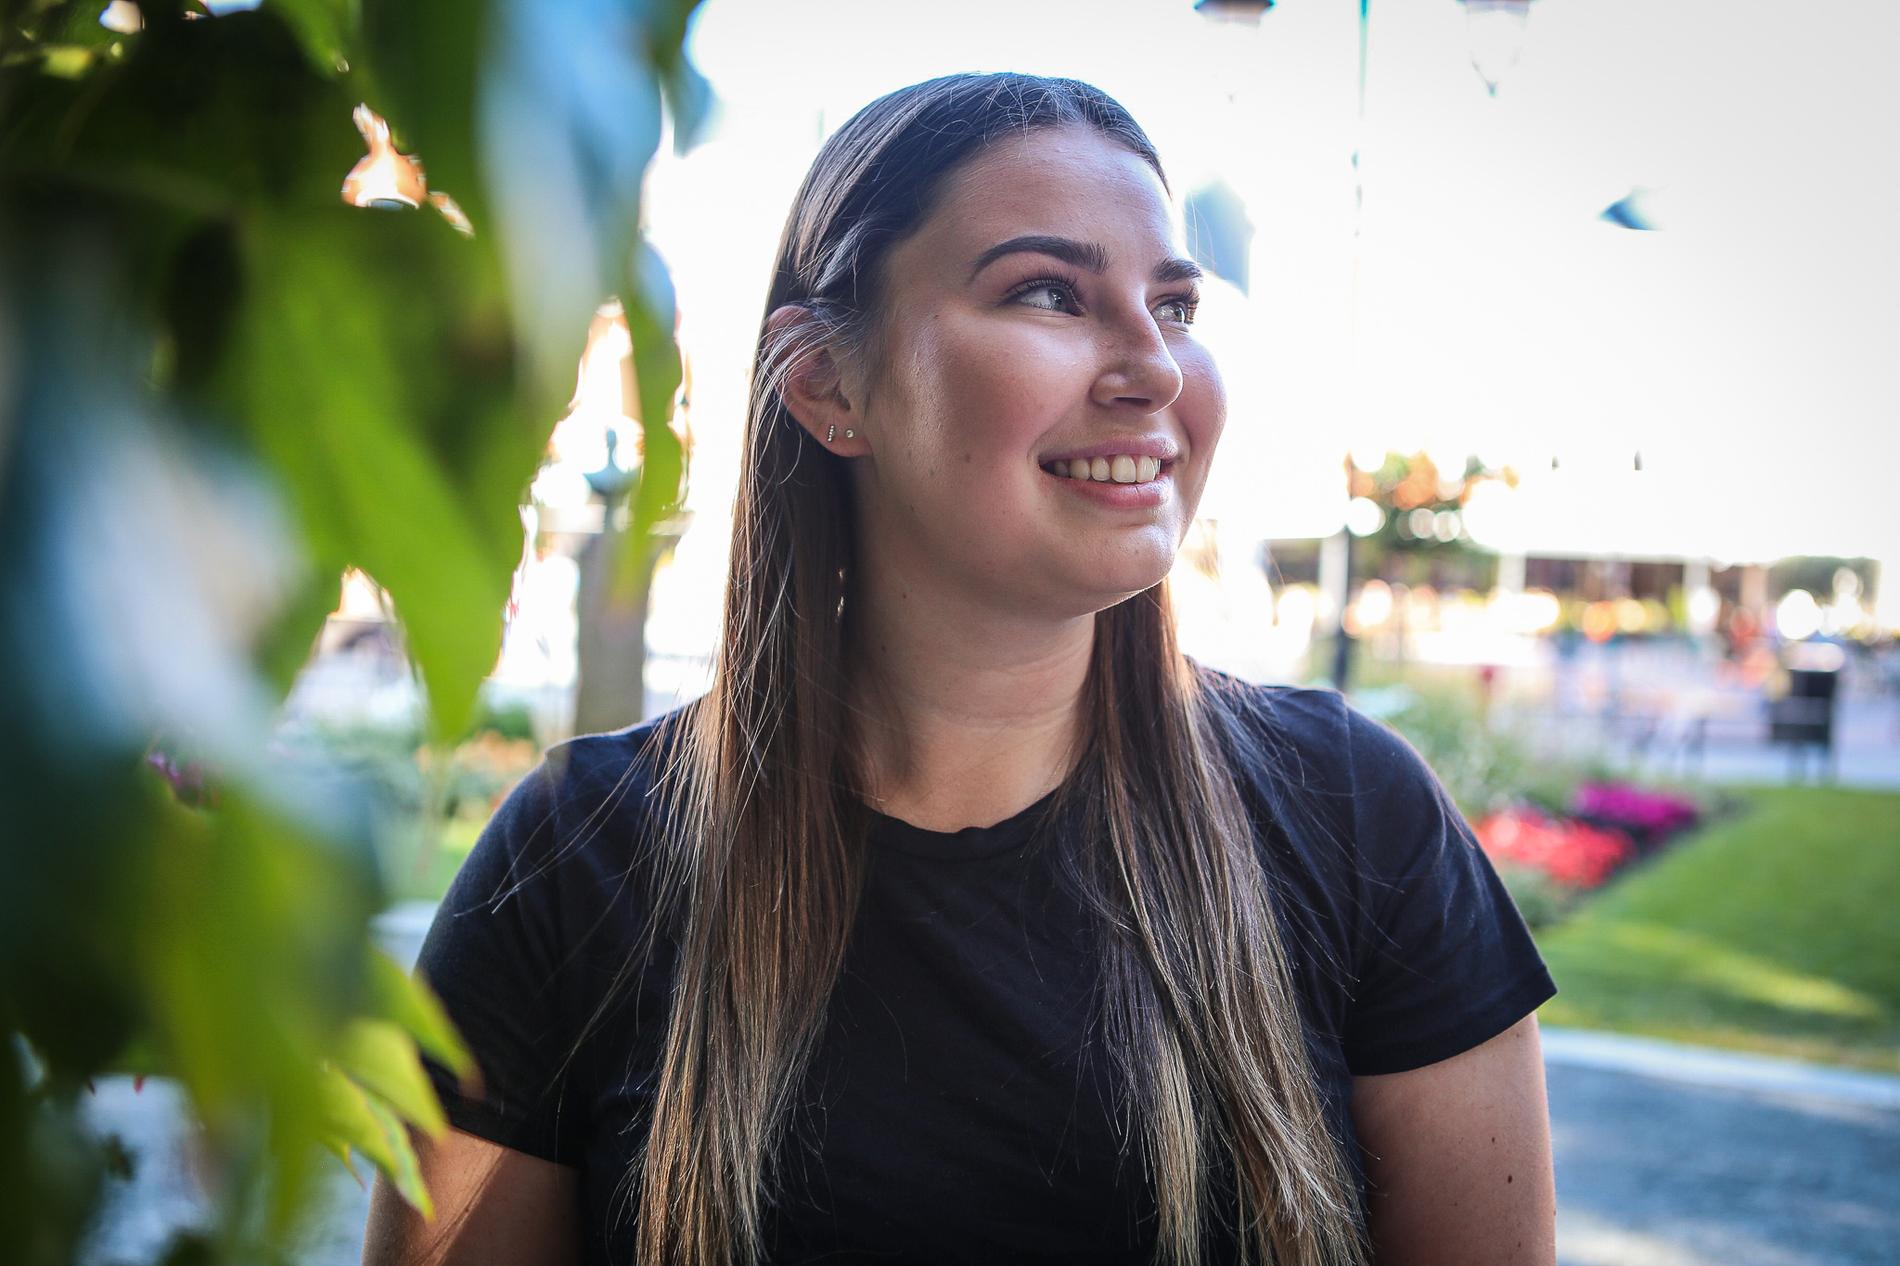 Bachelorgraden i utviklingsstudier ved UiA har ikke bare gitt Frida Neverdal (22) muligheten til internasjonale møter med mennesker, men også få innsyn i lokal kultur og unike ferieopplevelser under utveksling i Amerika og Asia.